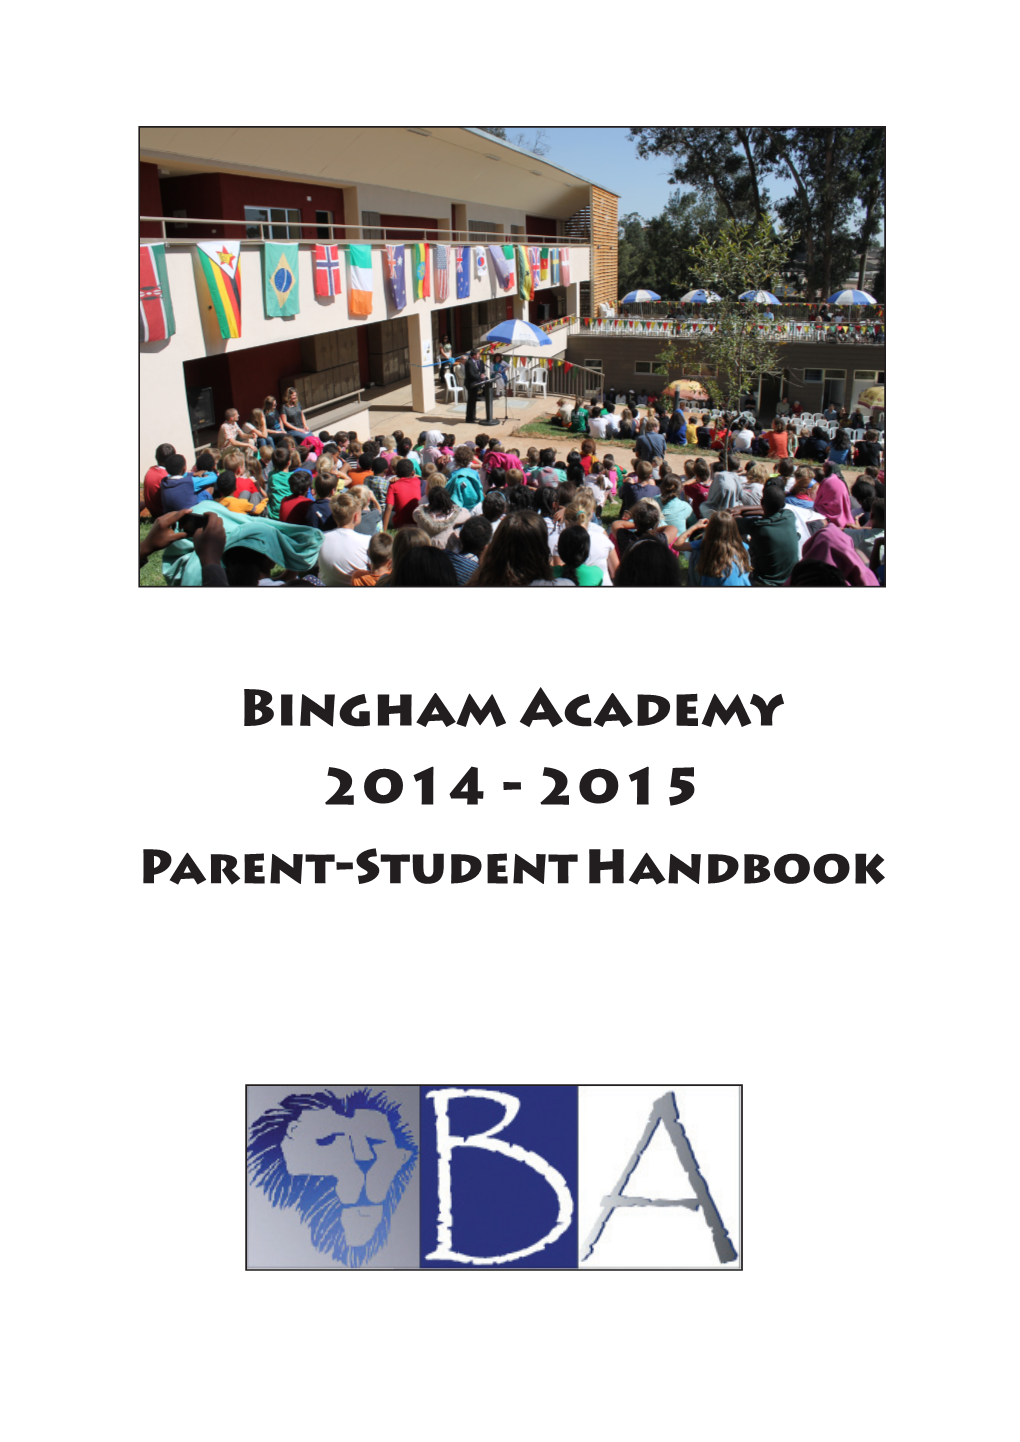 2015 Parent-Student Handbook Welcome